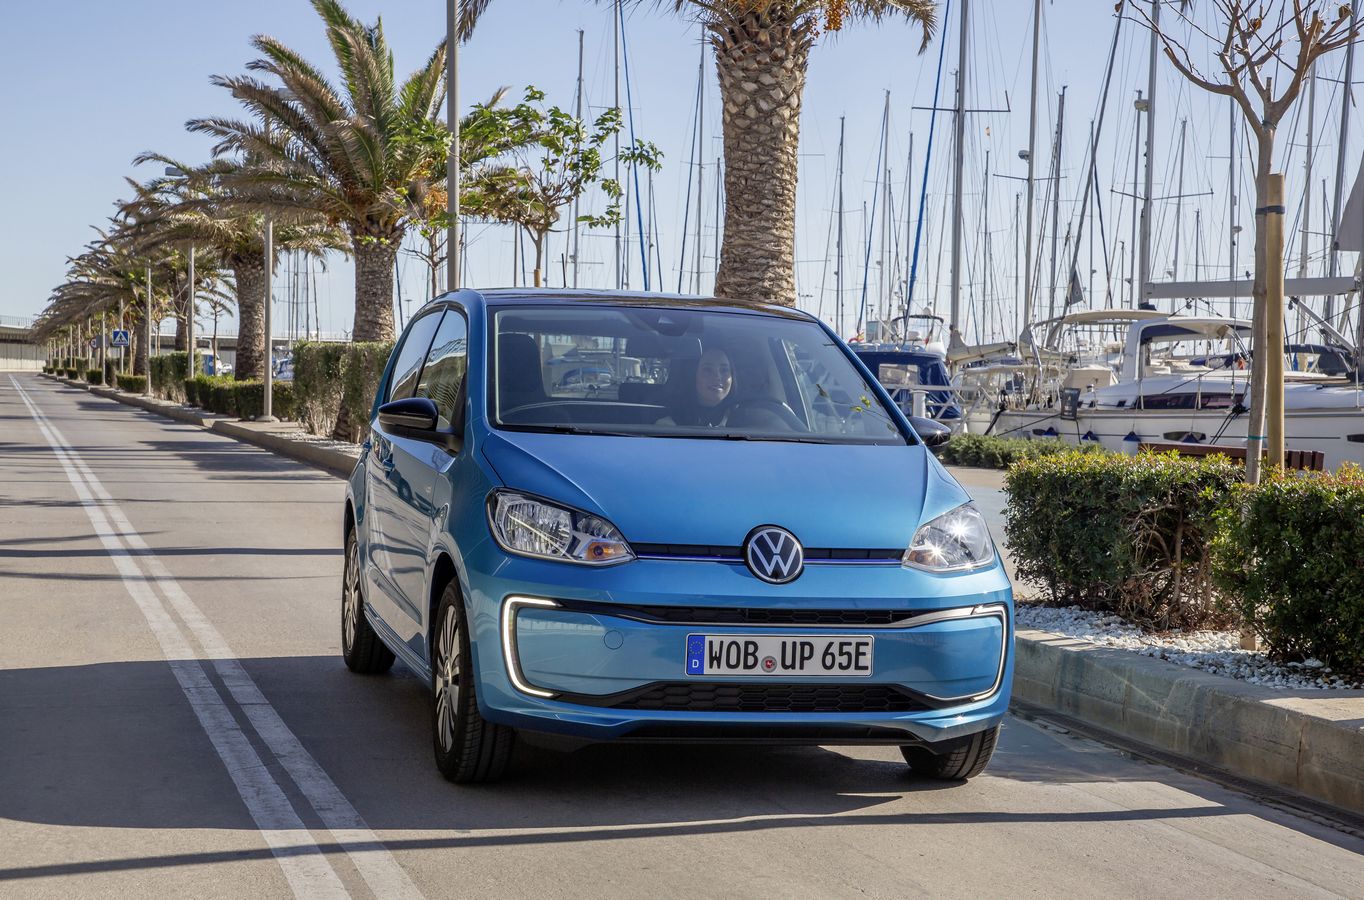 Volkswagen e-UP - Prix, autonomie, fiche technique